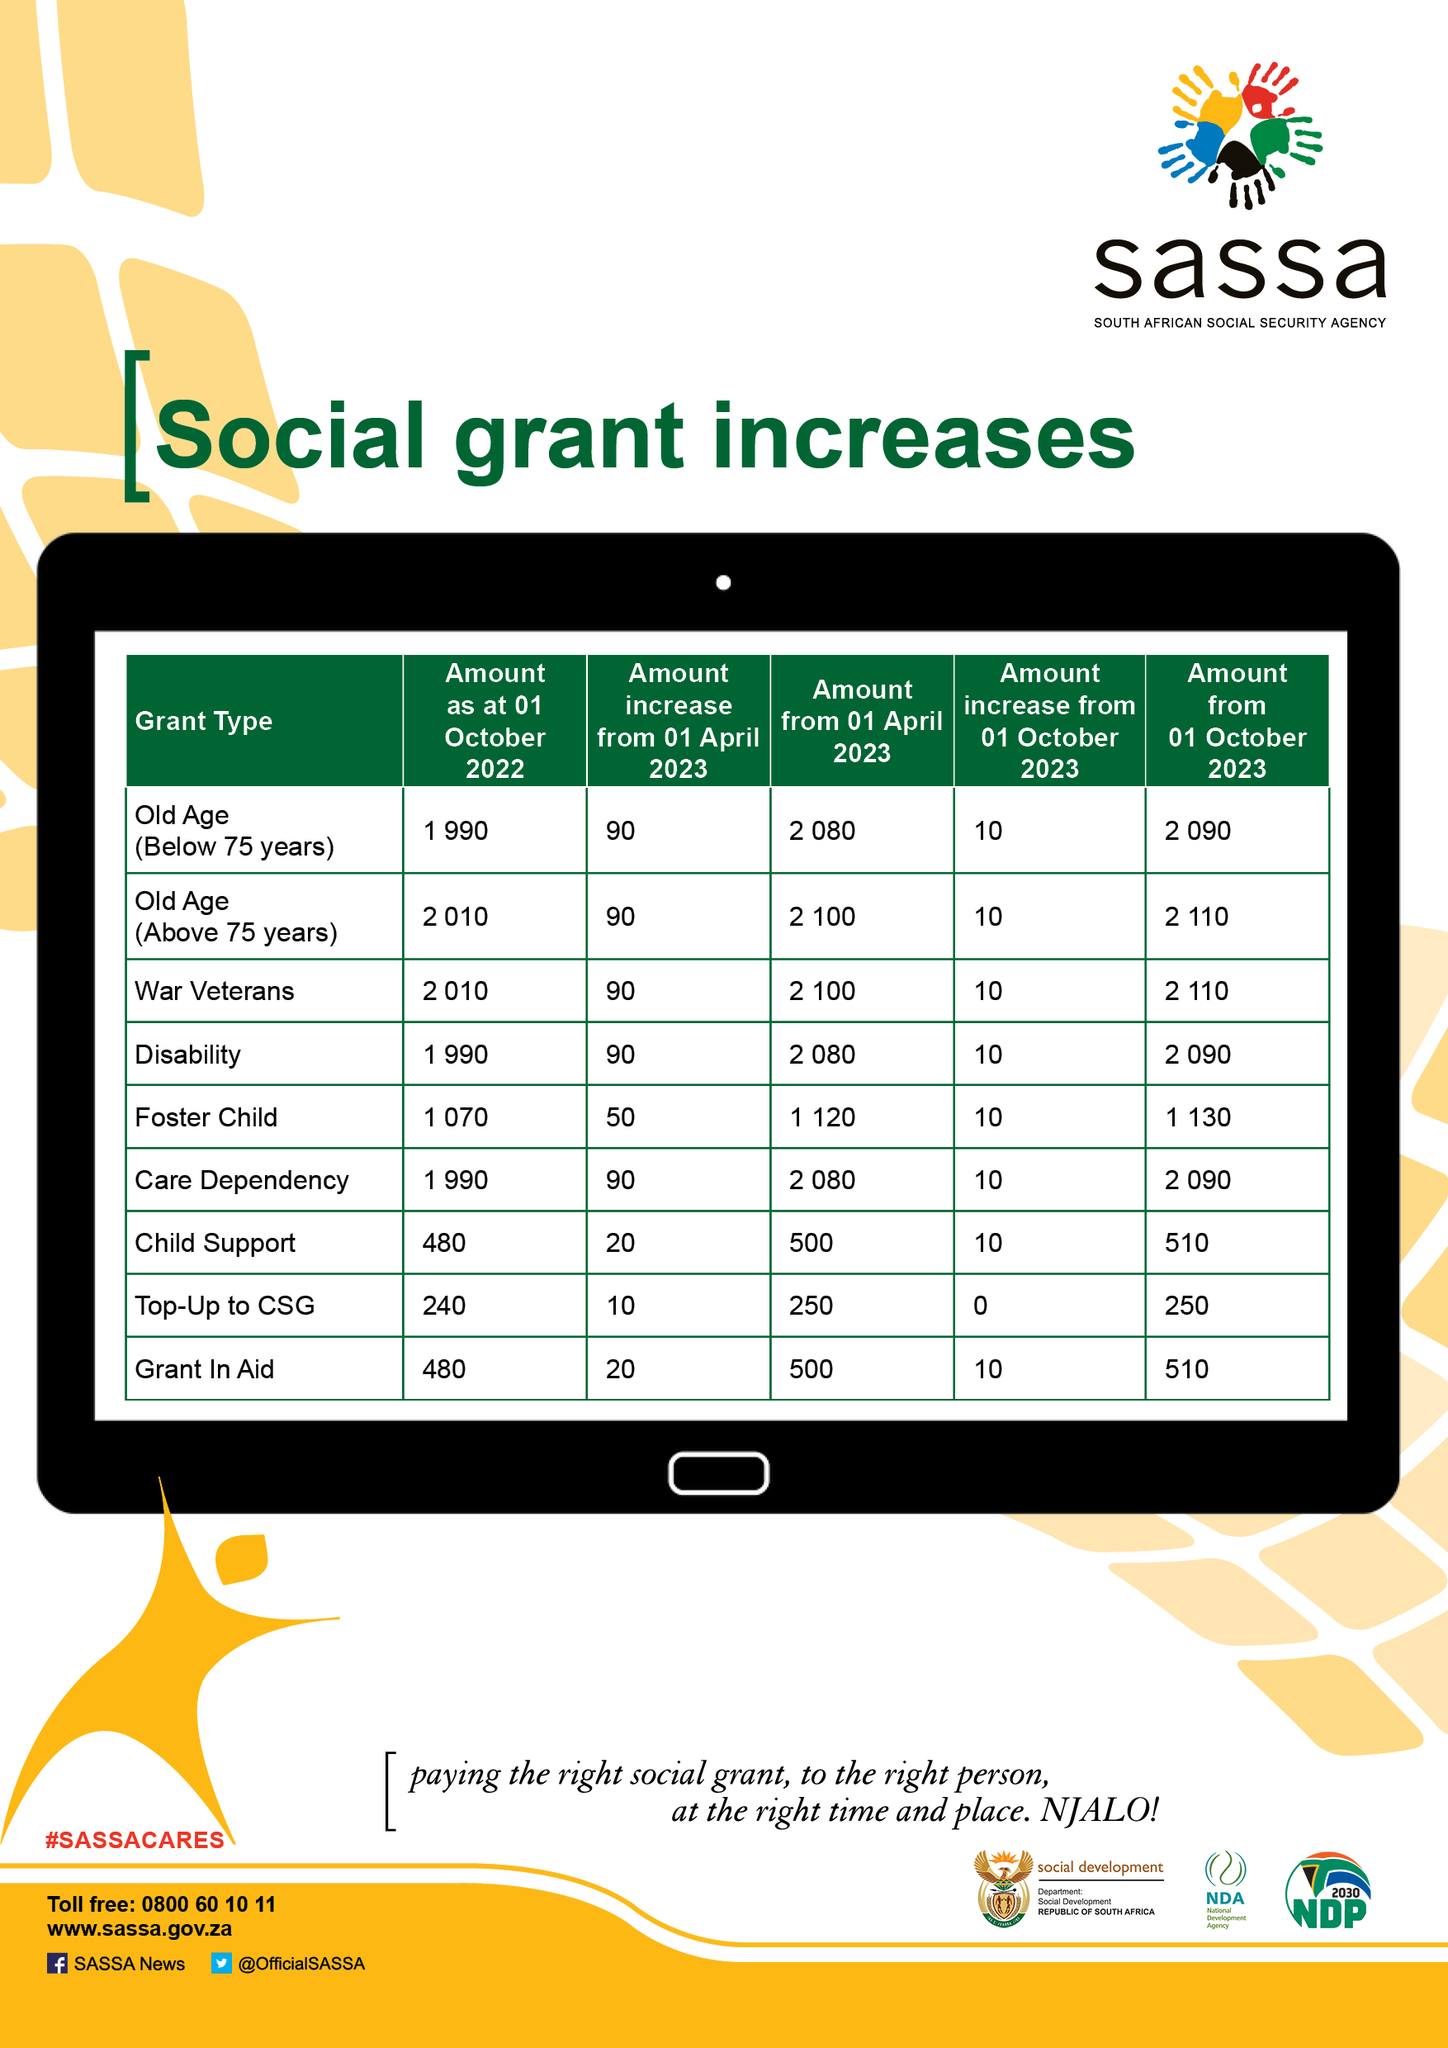 Social Grant increases 2023